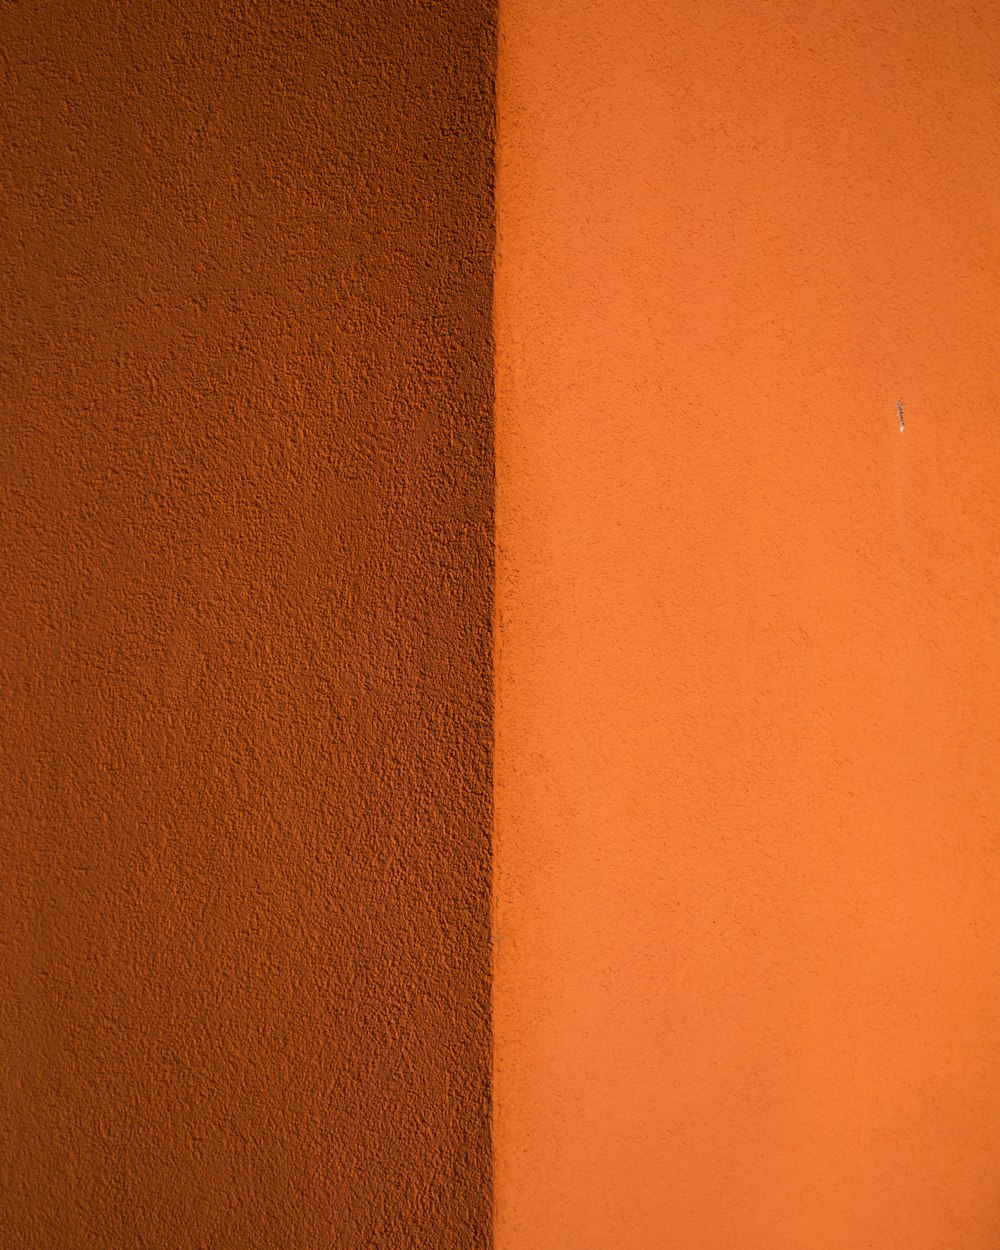 茶色の木製テーブルの近くのオレンジ色の壁のペンキ